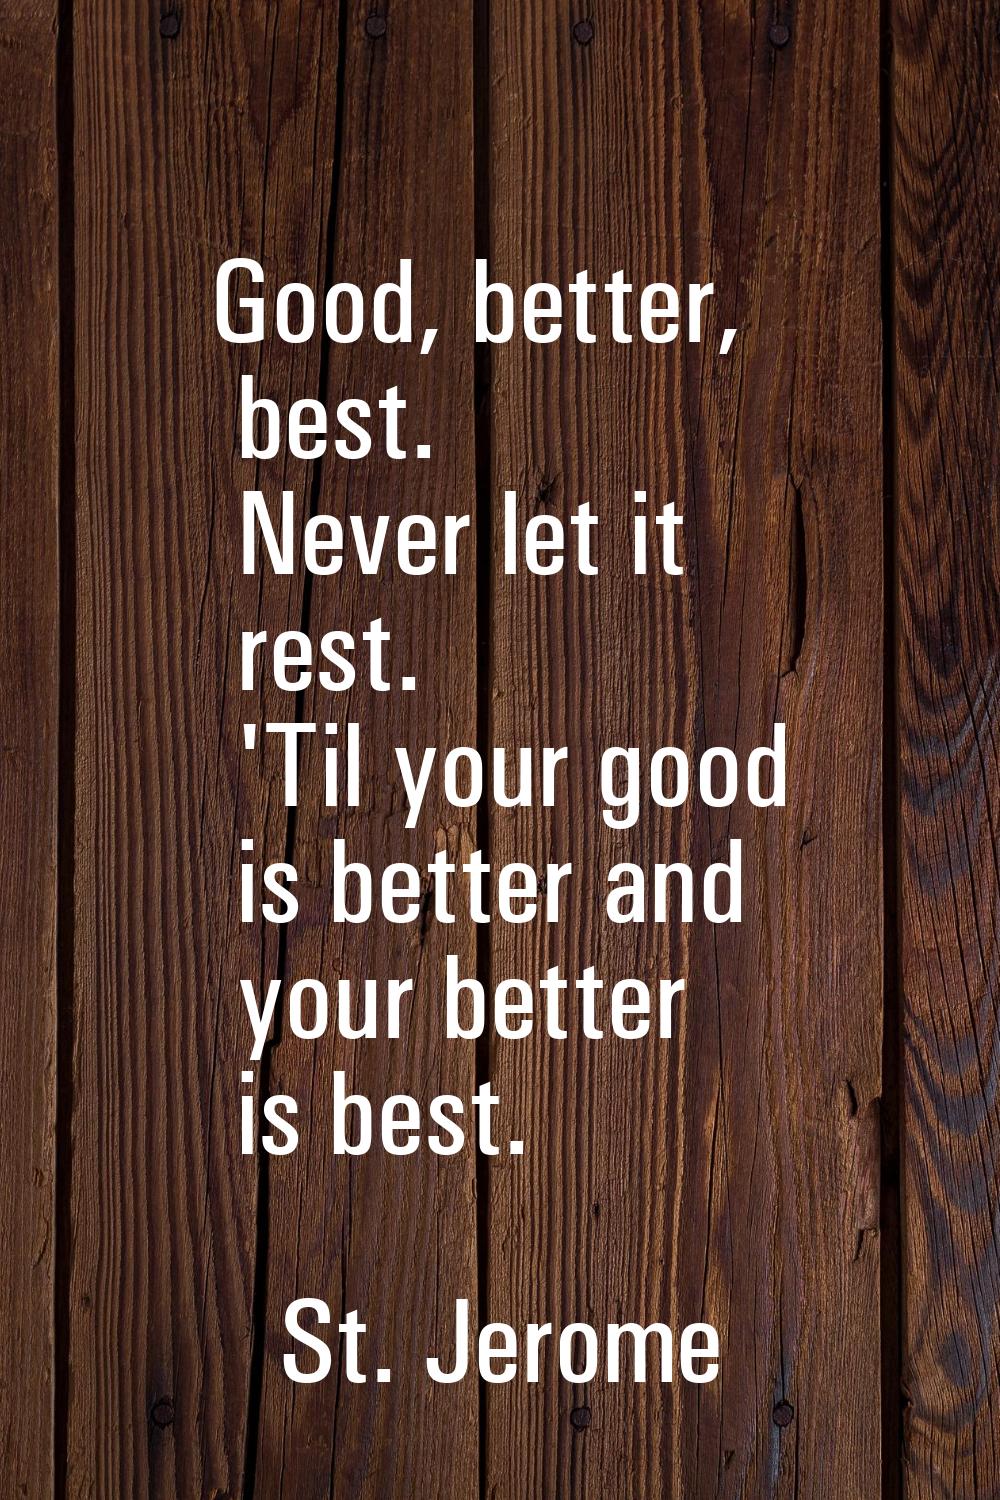 Good, better, best. Never let it rest. 'Til your good is better and your better is best.